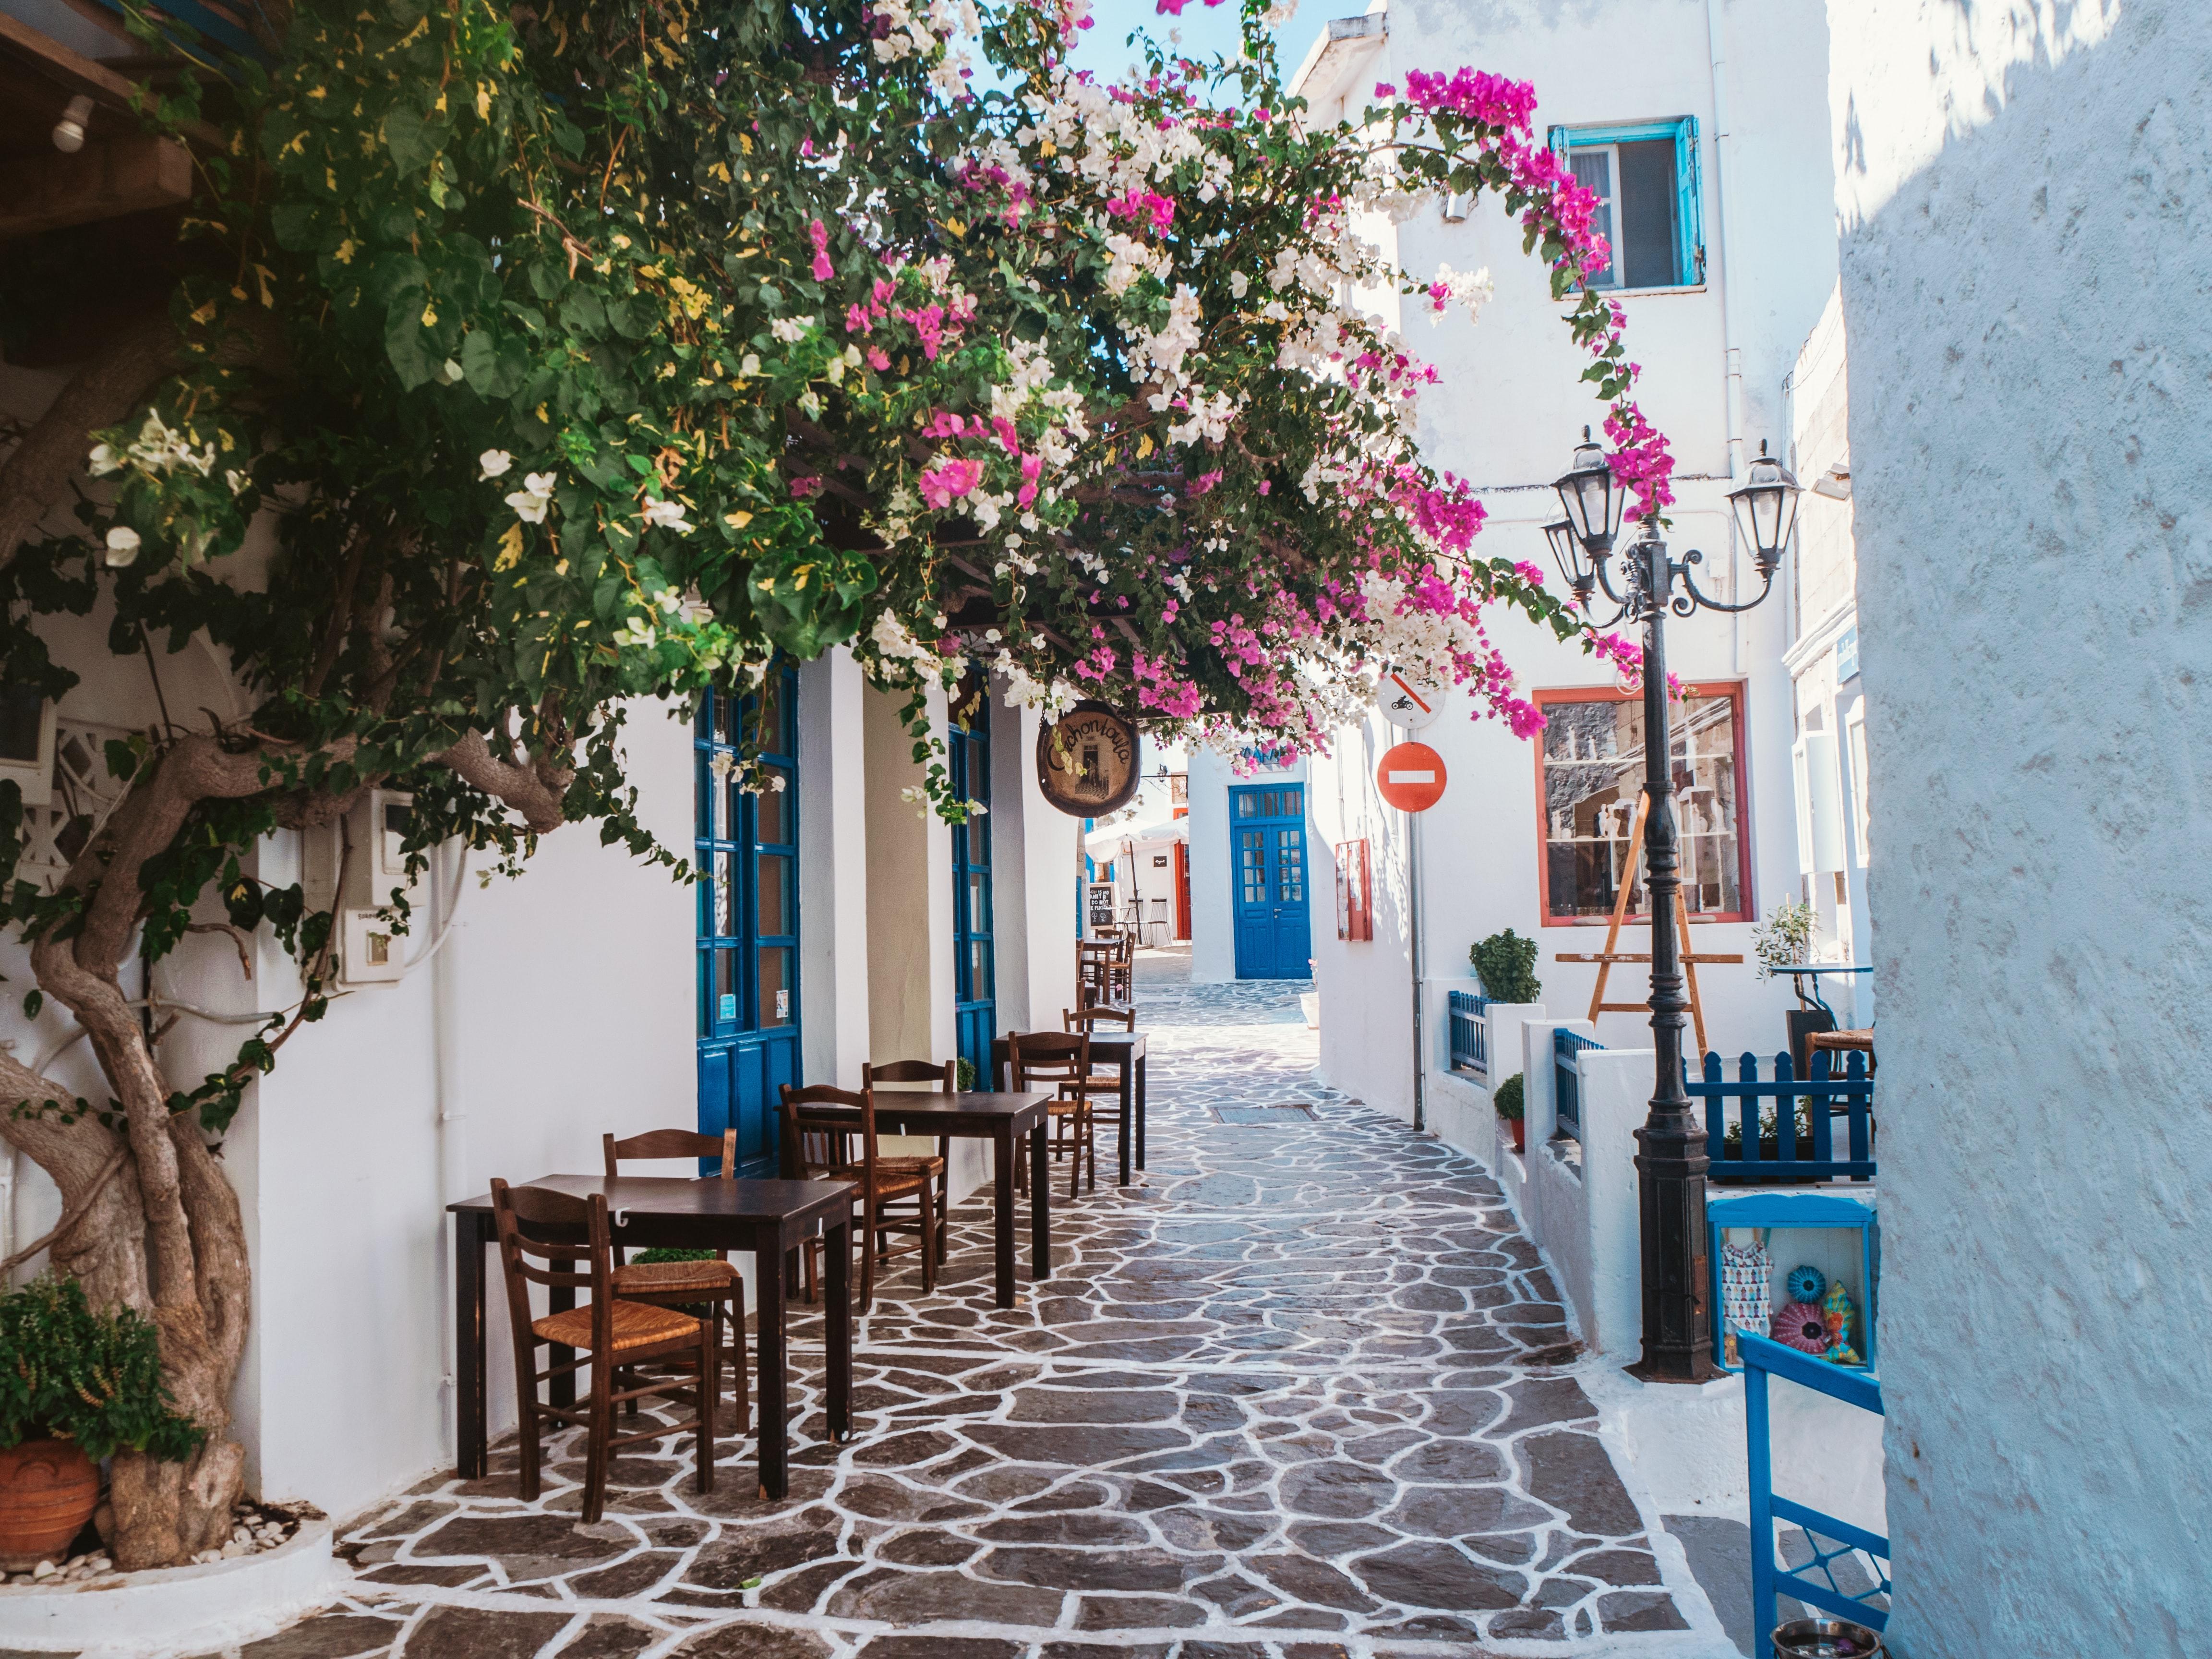 mooiste Griekse eilanden